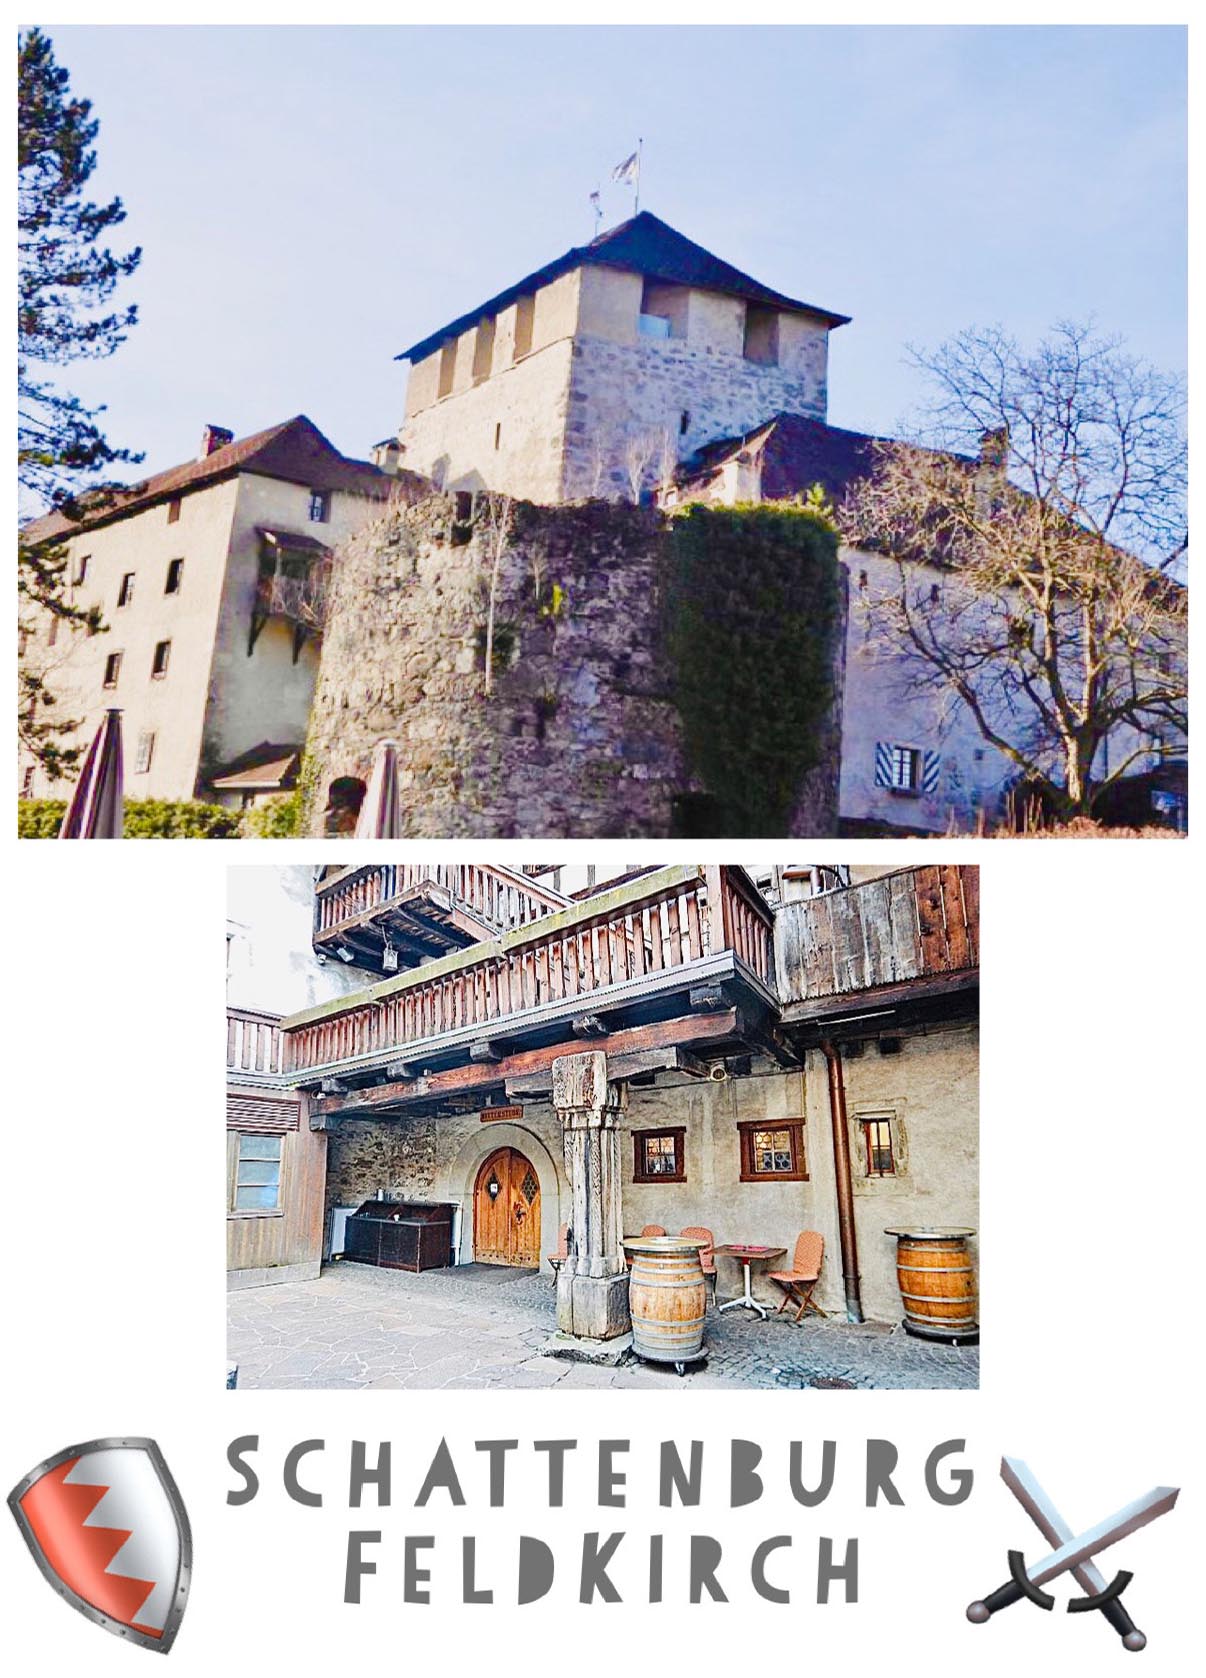 Die hochmittelalterliche Burg stellt eine der besterhaltenen Burganlagen Mitteleuropas dar. Erbaut um 1200. Vorarlberg, Österreich